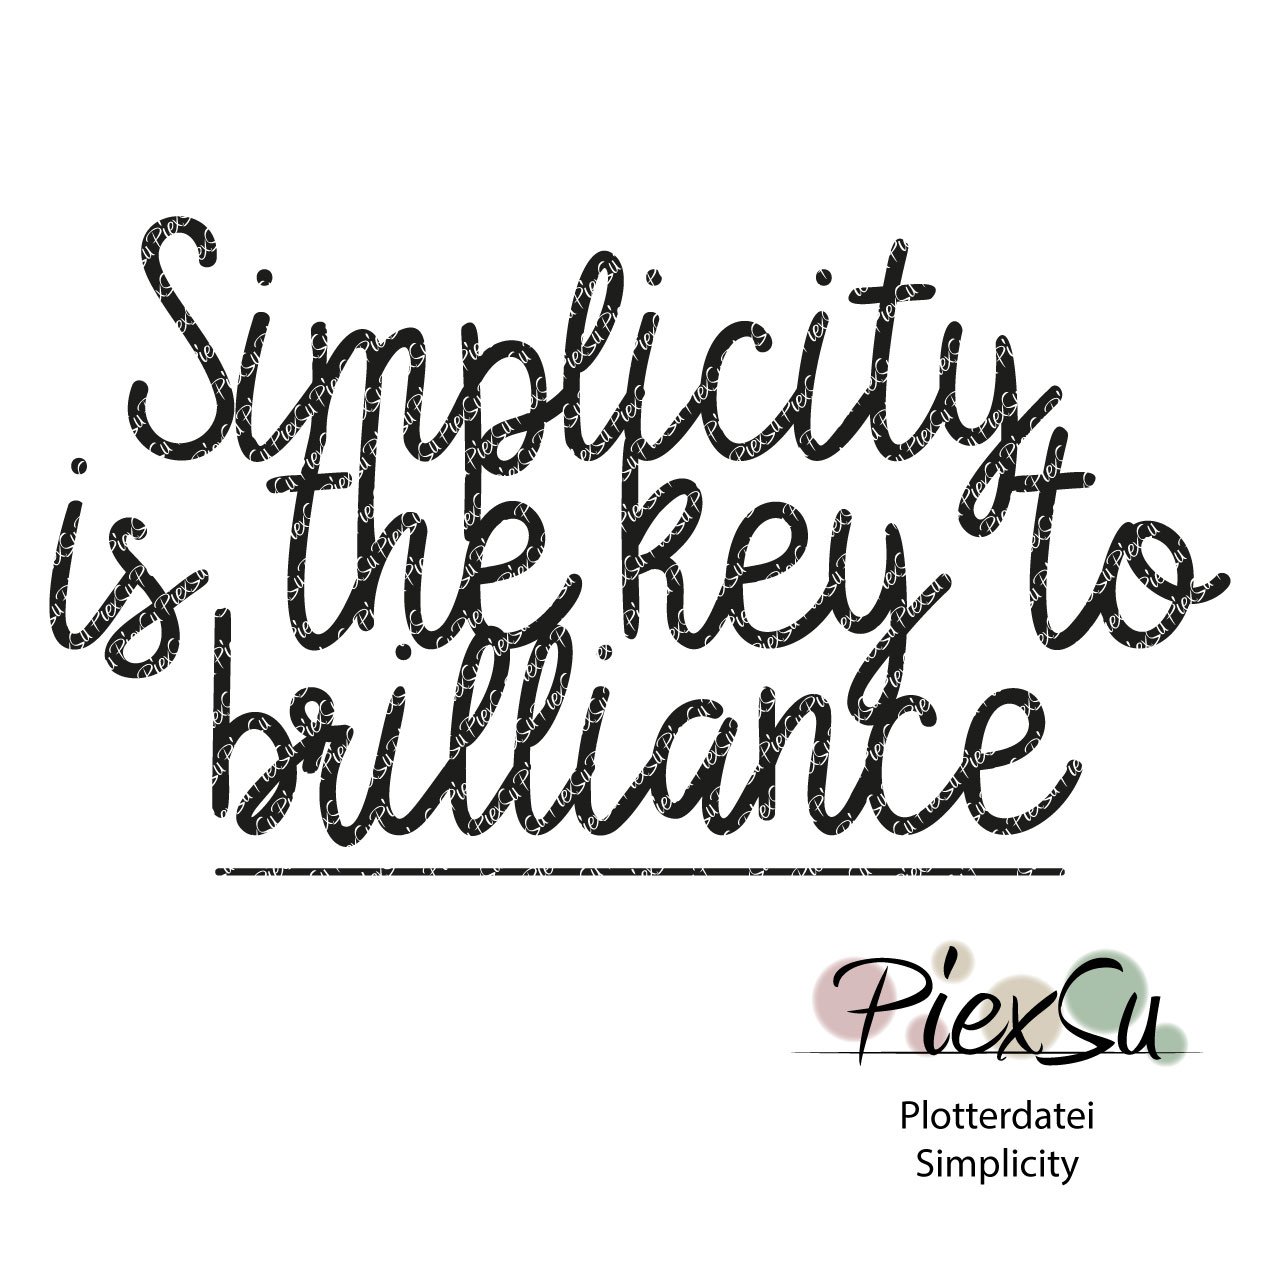 PiexSu-Plotterdatei-Simplicity-dxf-svg-plotten-Titelbild